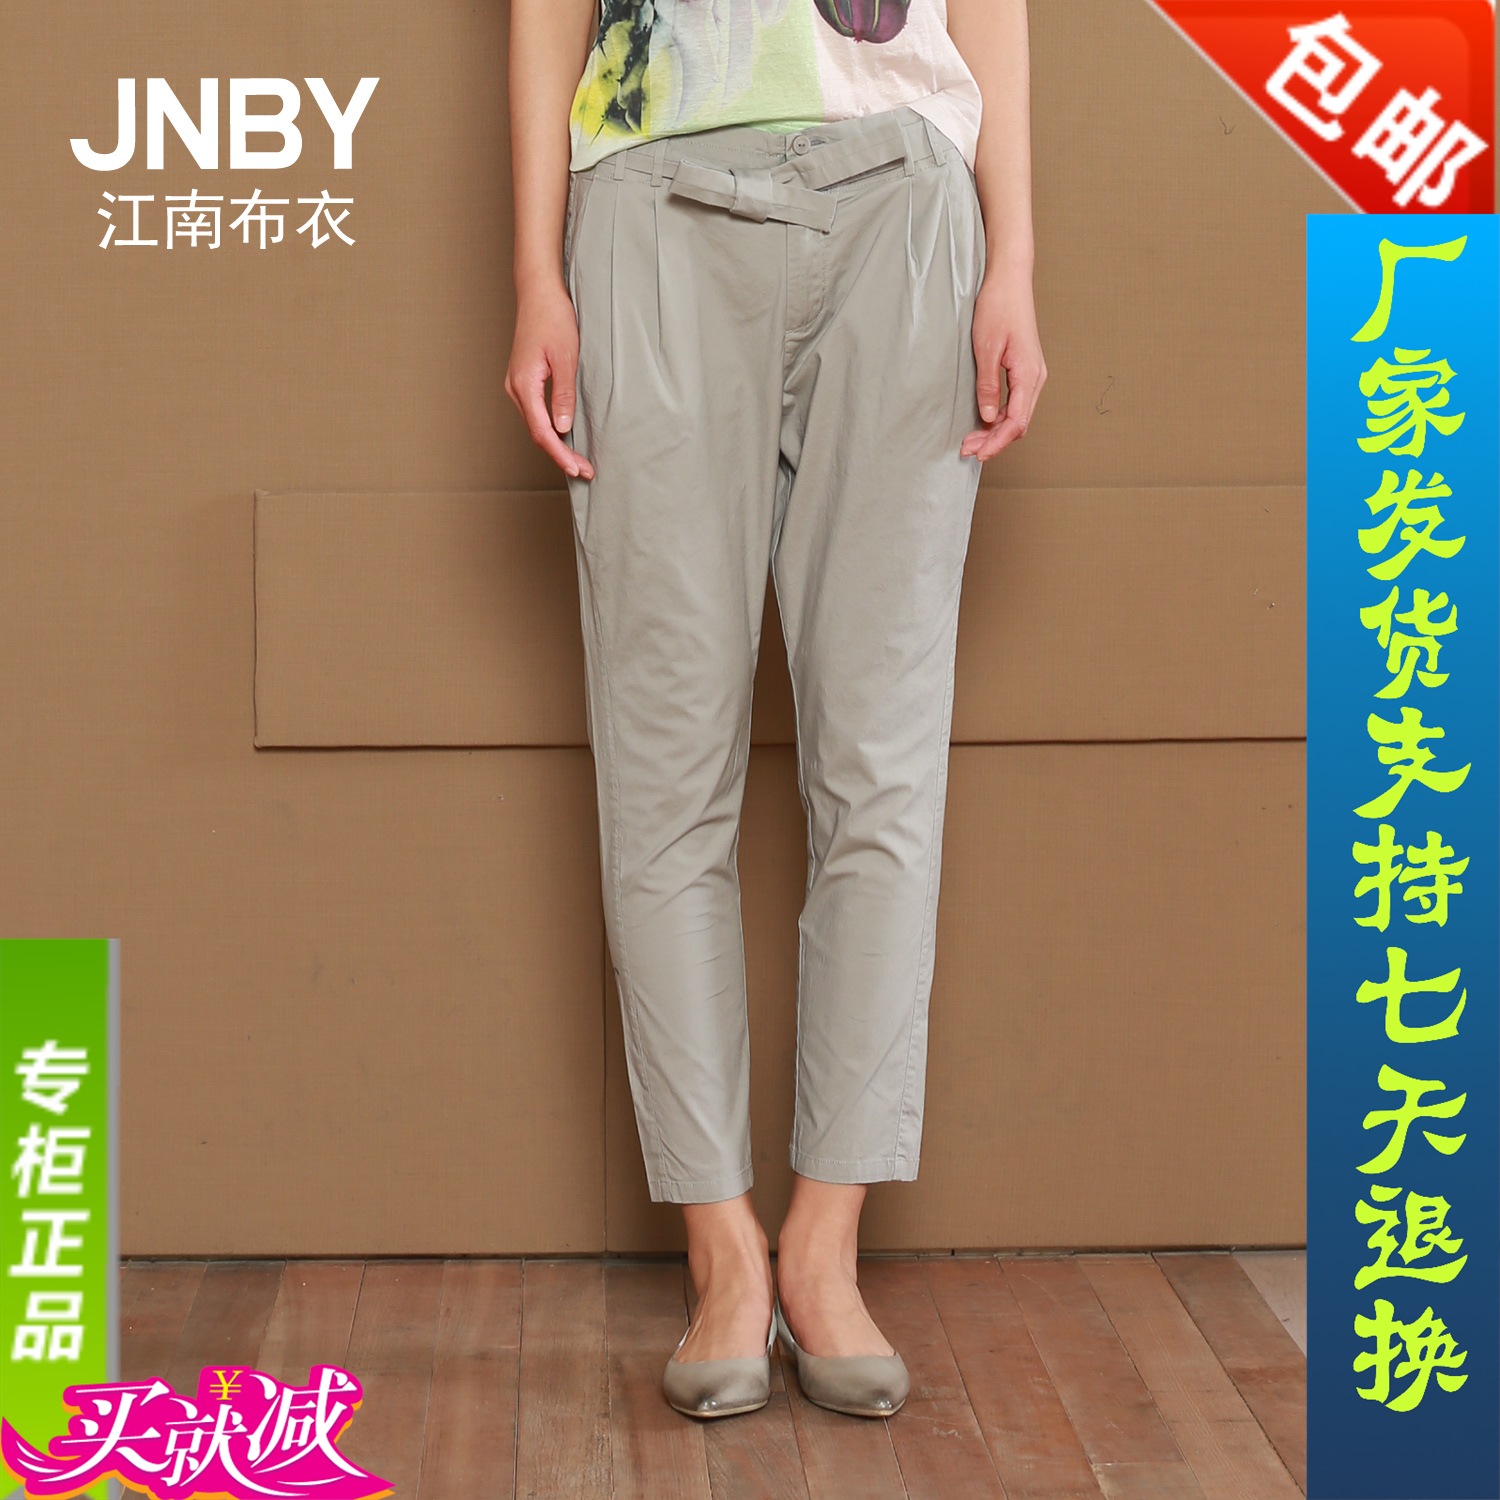 包邮JNBY江南布衣2015夏季七分裤新款长裤通勤女休闲裤5C43077